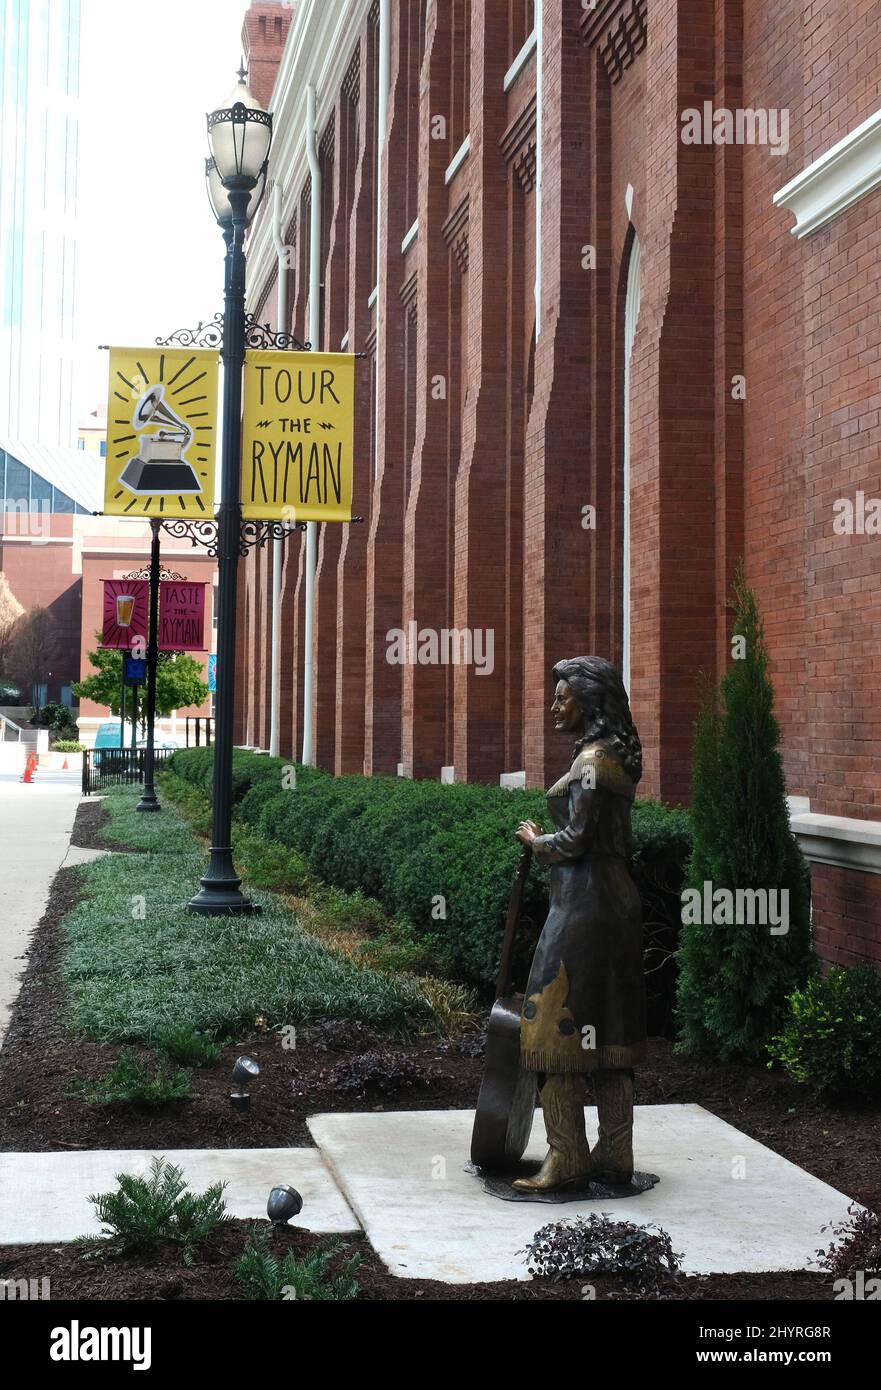 Die Country-Musik-Ikone Loretta Lynn ist die erste Frau, die vor dem berühmten Ryman Auditorium in Nashville eine Statue verdient Stockfoto